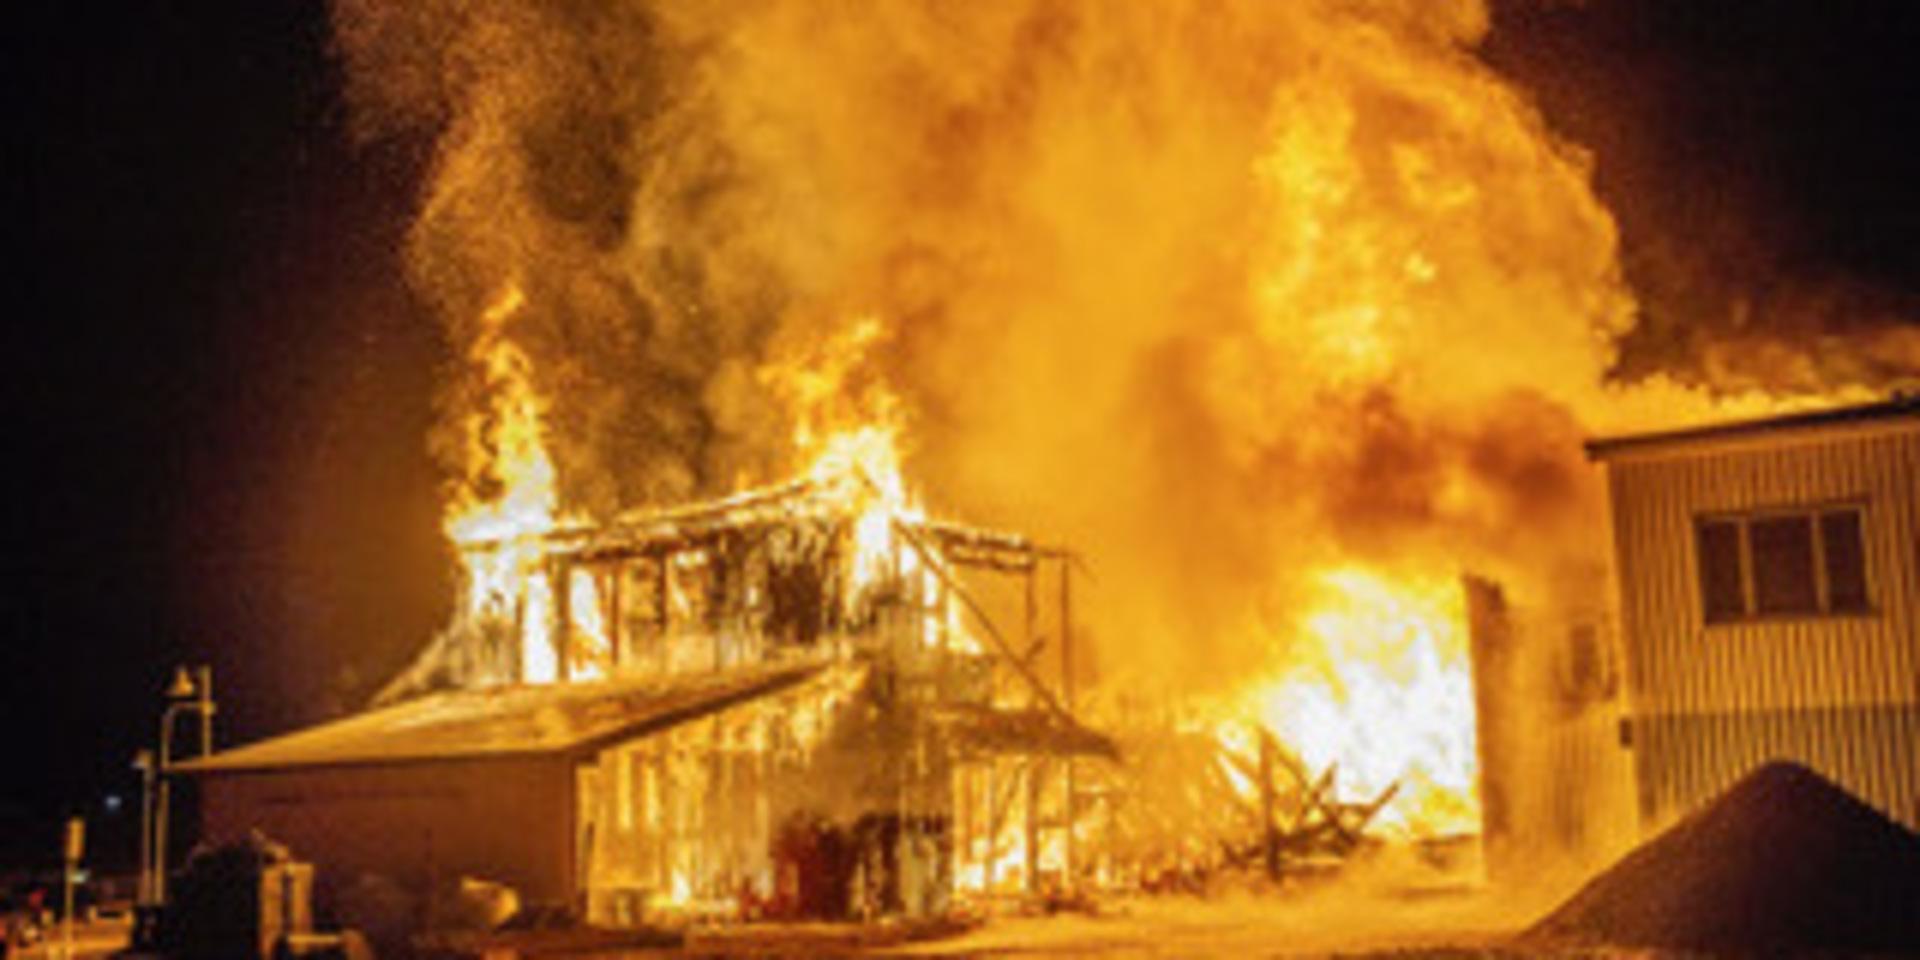 Räddningstjänsten larmades till en brand i Hedemora strax före midnatt. 